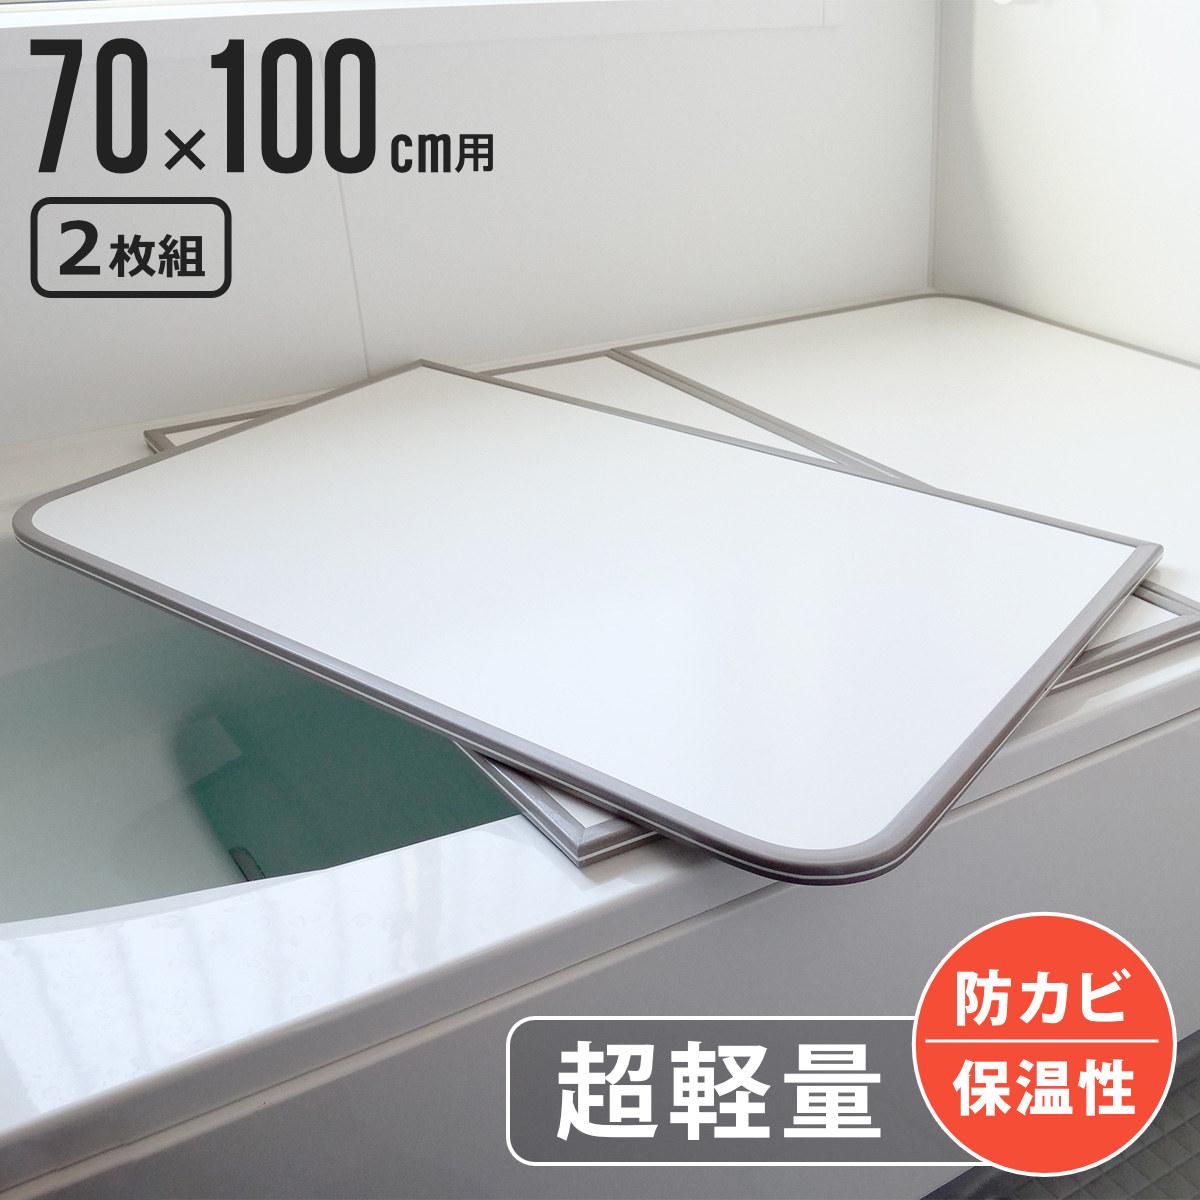  風呂ふた 組み合わせ 軽量 カビの生えにくい風呂ふた M-10 70×100cm 実寸68×98cm 2枚組